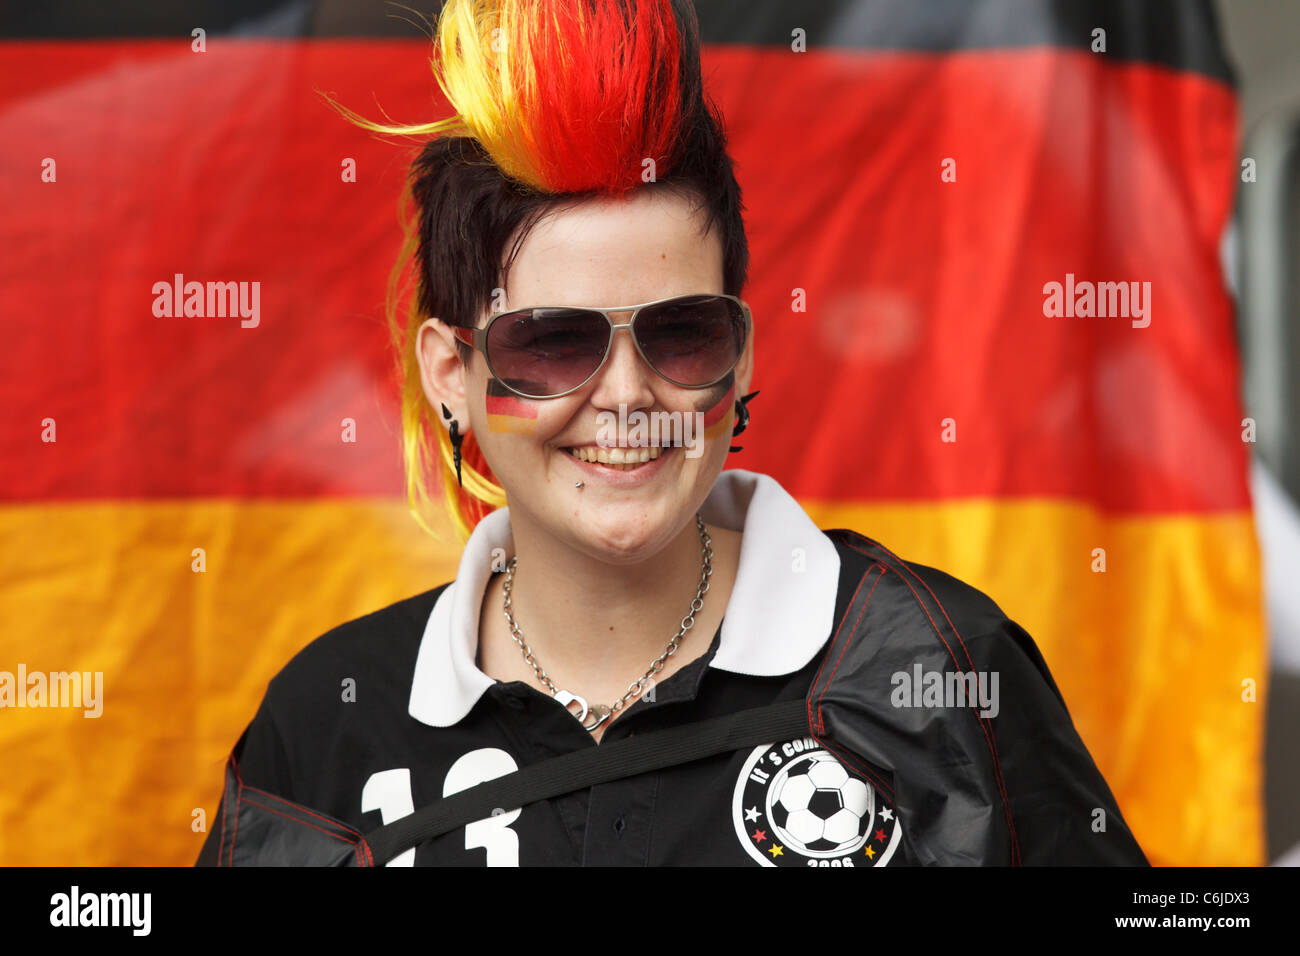 Un partisan de l'Allemagne sourit avant le match d'ouverture de la Coupe du Monde féminine Coupe du monde entre l'Allemagne et le Canada. Banque D'Images